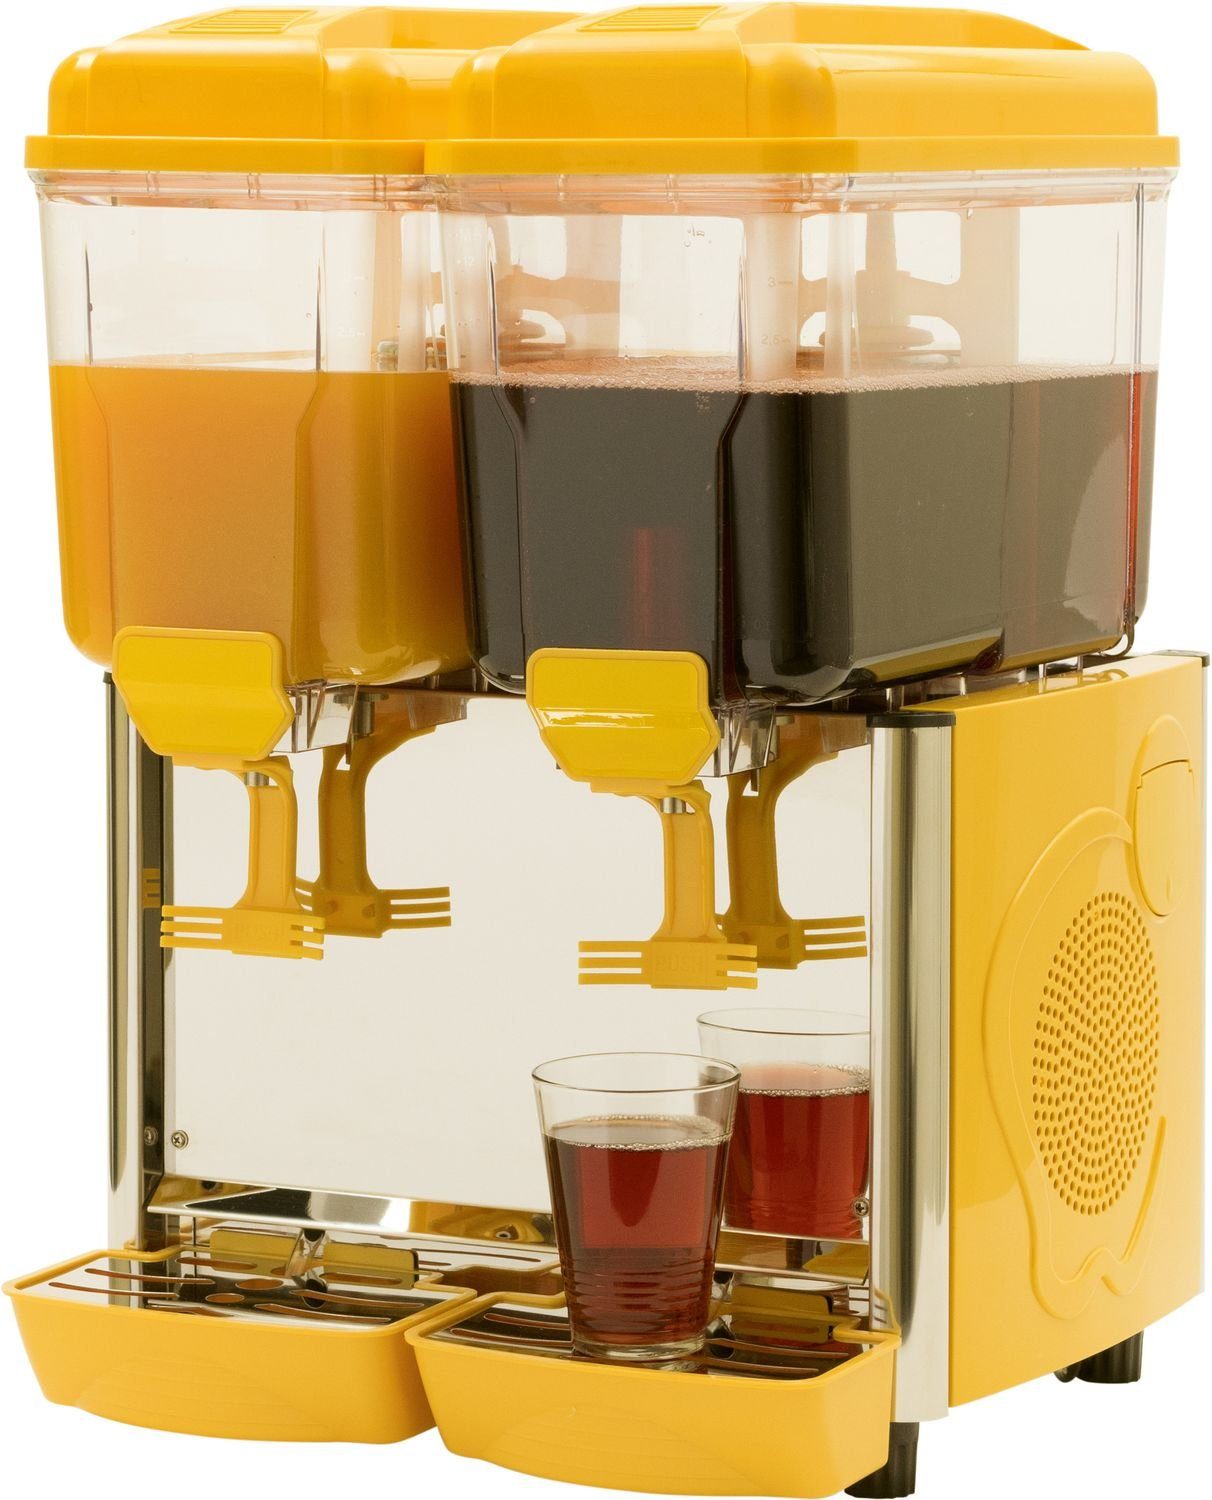 Saftspender, Einkochautomat Dispenser, mit Getränkespender Kühlung, Saro gelb 2G Kaltgetränke